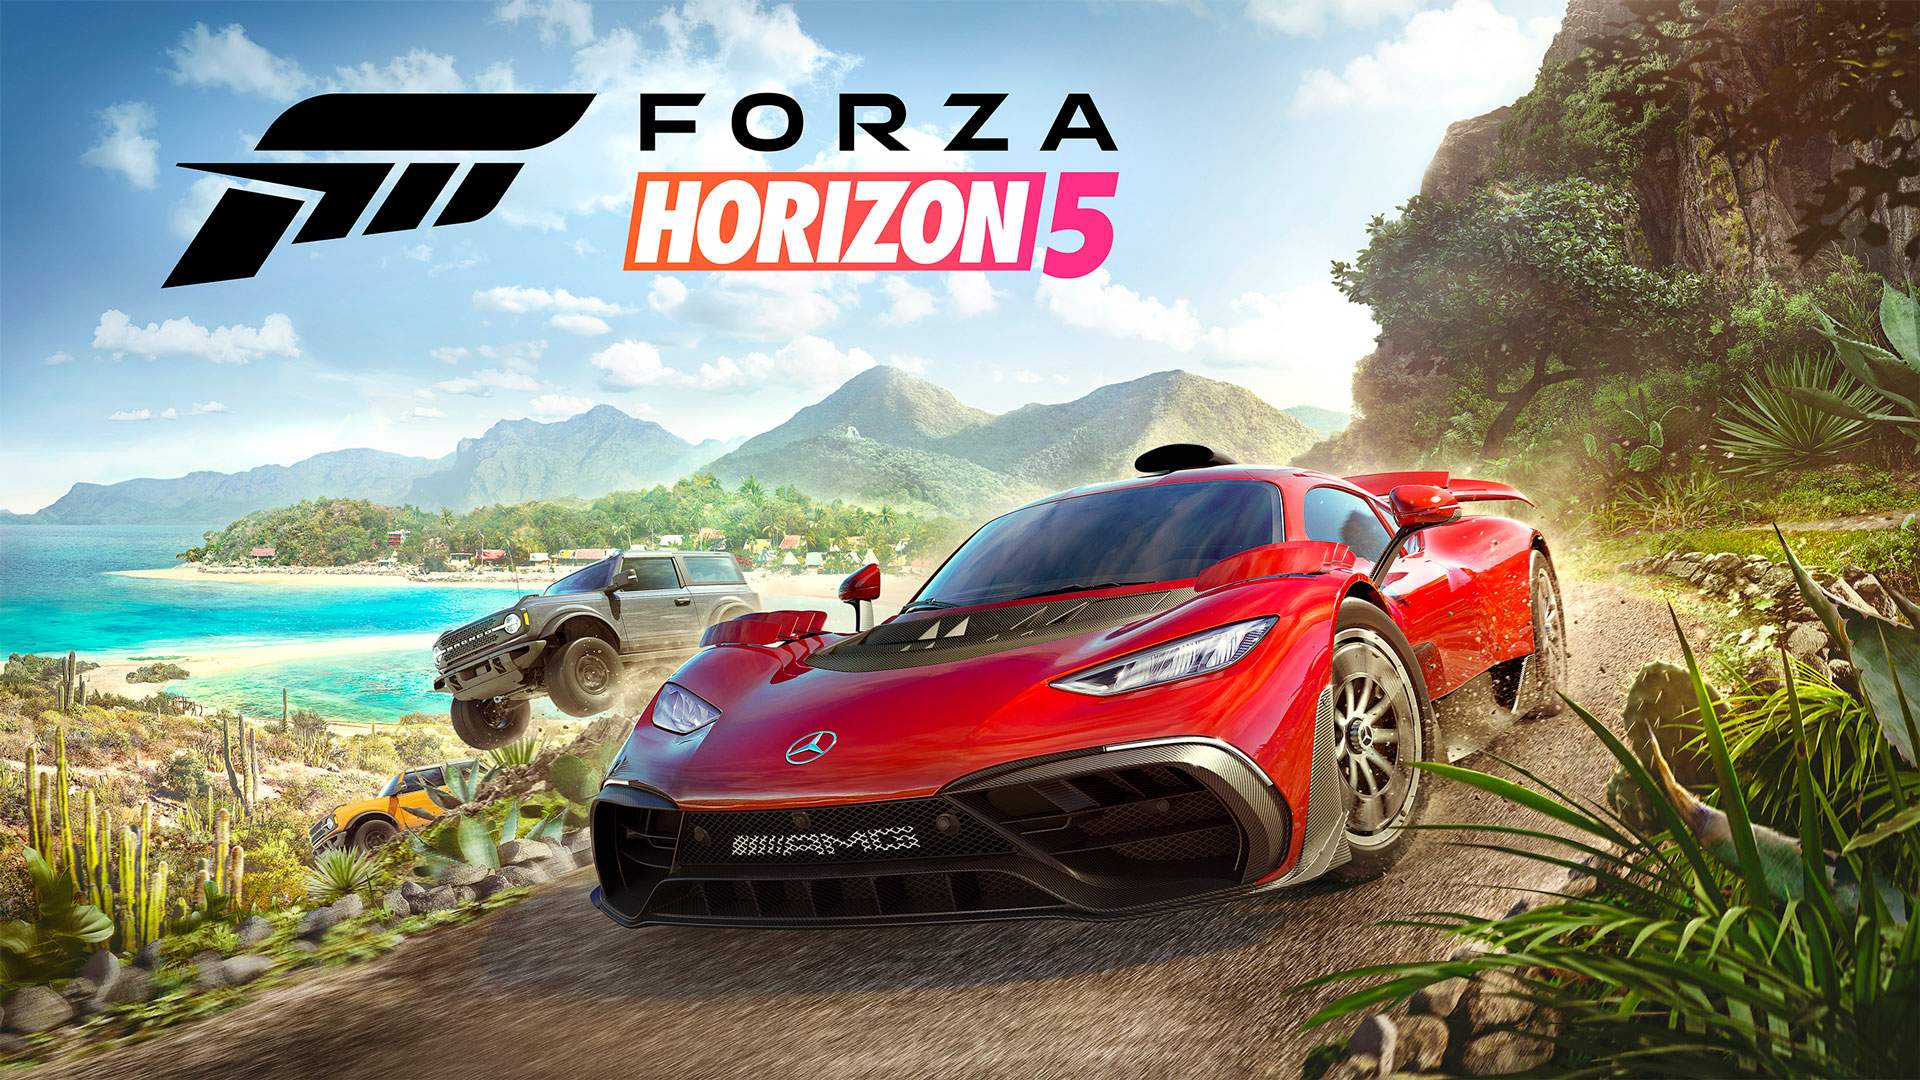 Команду Forza Horizon 5 покинули несколько ключевых сотрудников - они создали новую студию